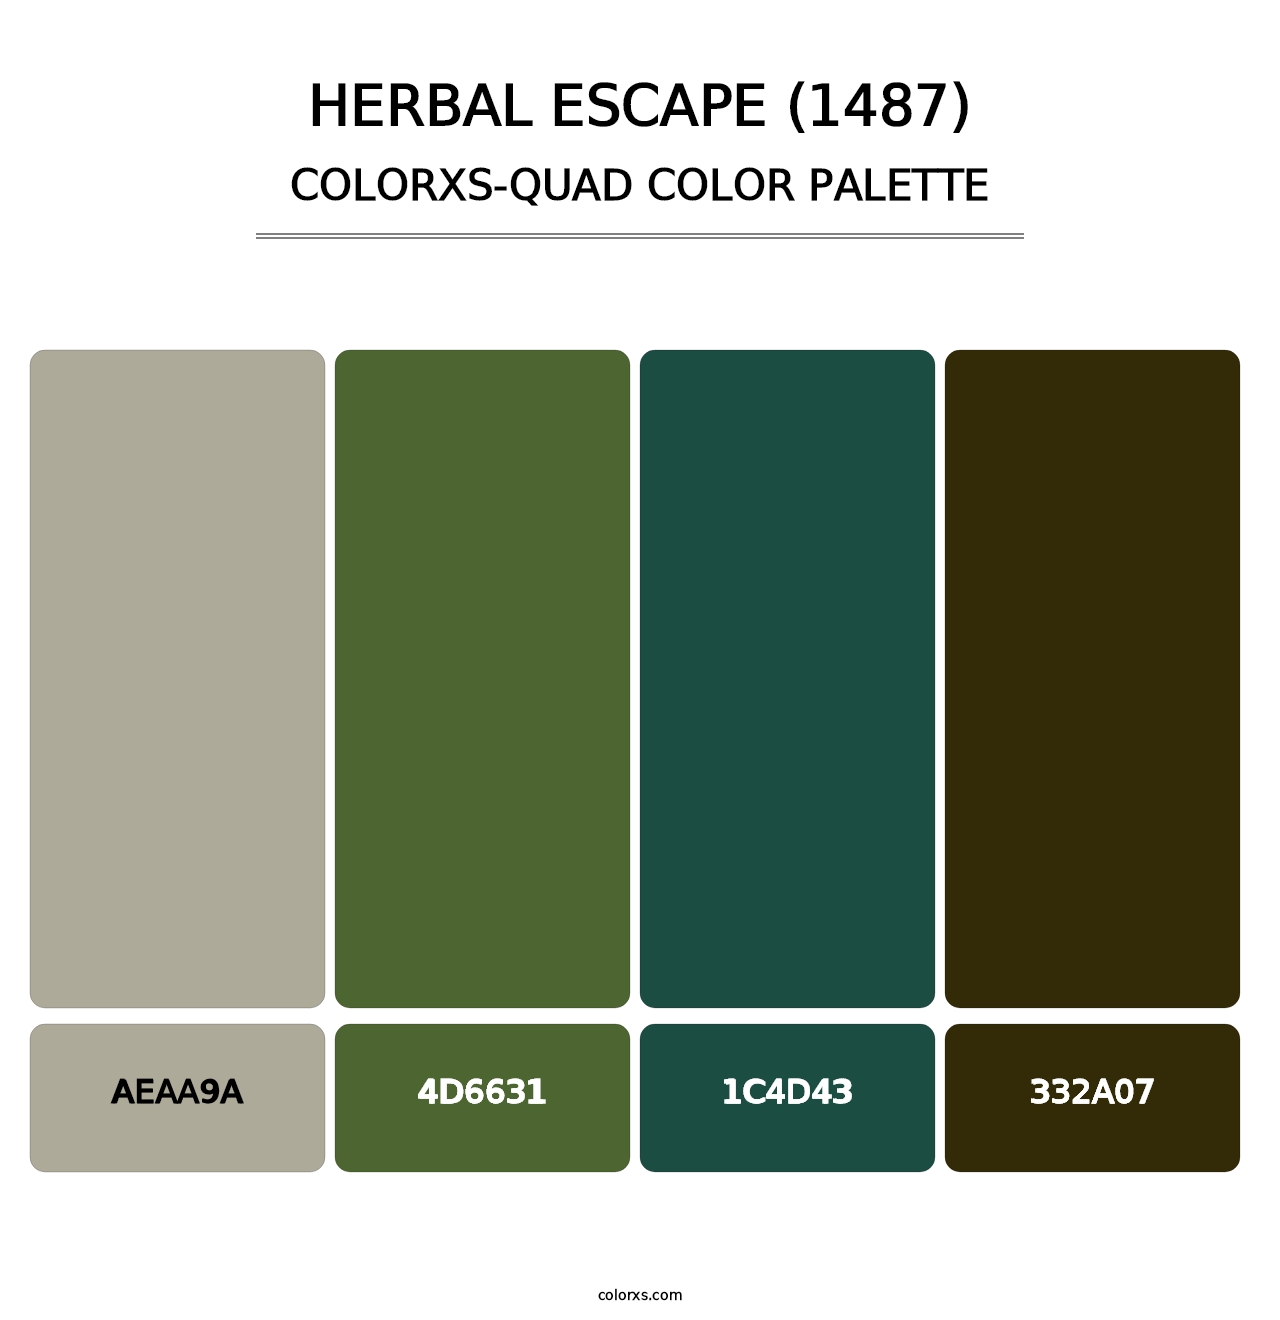 Herbal Escape (1487) - Colorxs Quad Palette